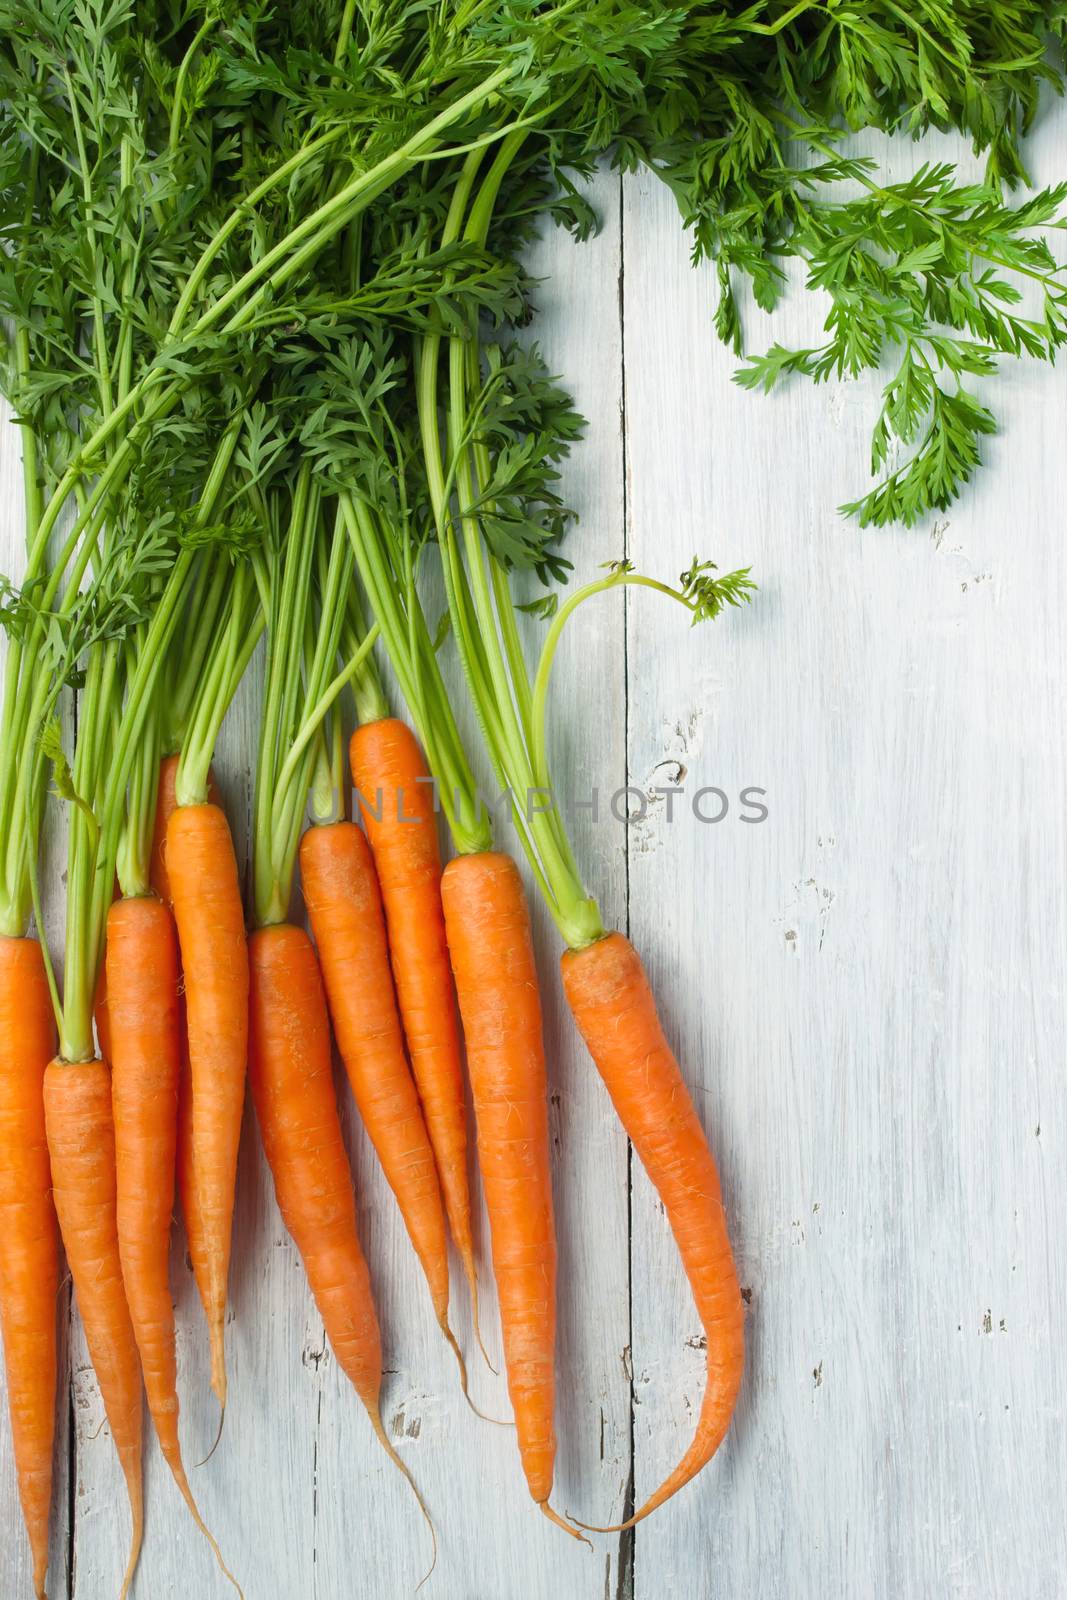 Carrots on the white background by Deniskarpenkov